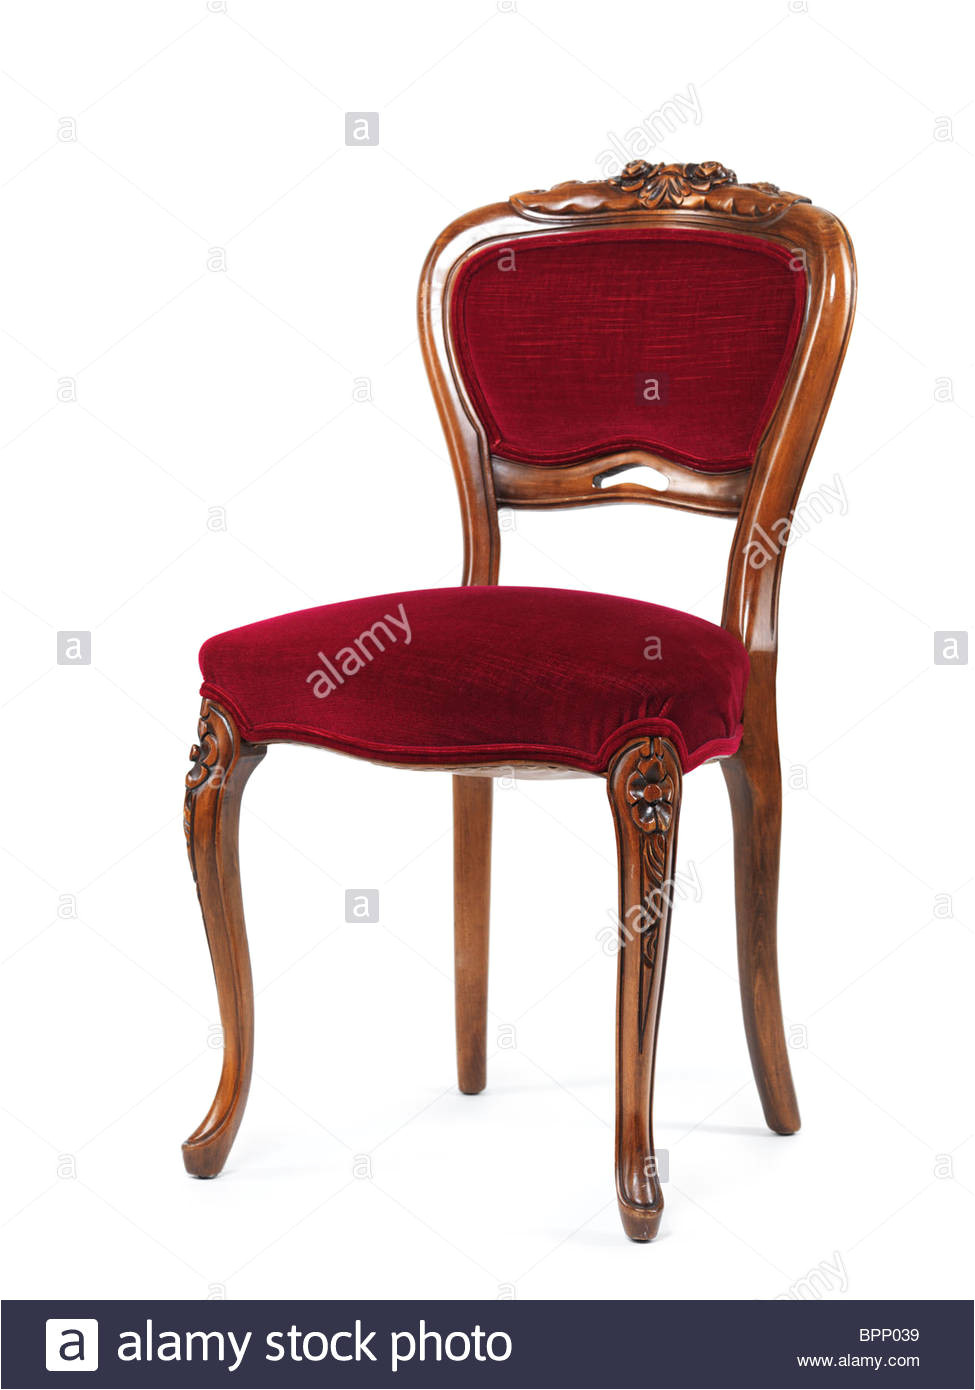 silla de madera antigua con tapicera a roja aislado sobre fondo blanco imagen de stock